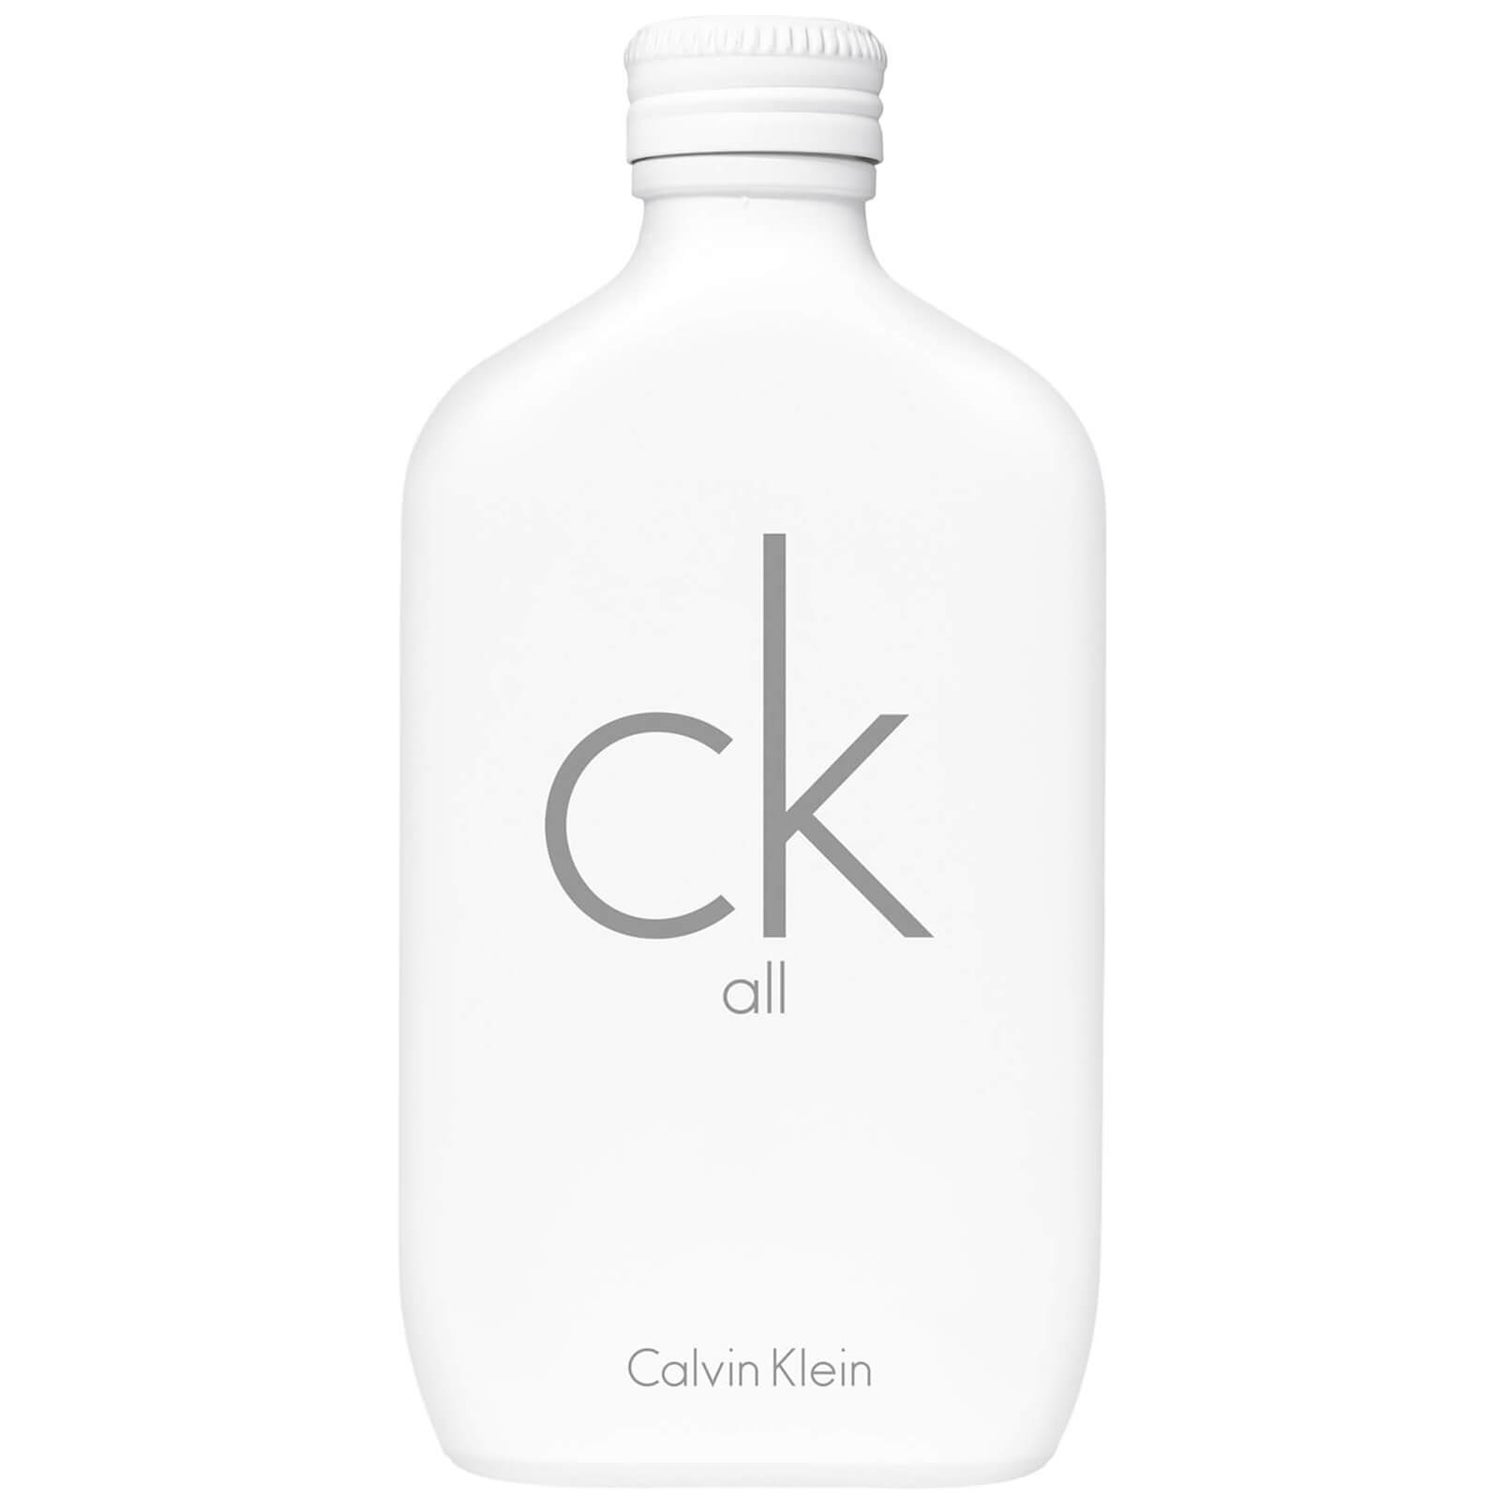 Calvin Klein CK All Unisex Eau de Toilette 200ml